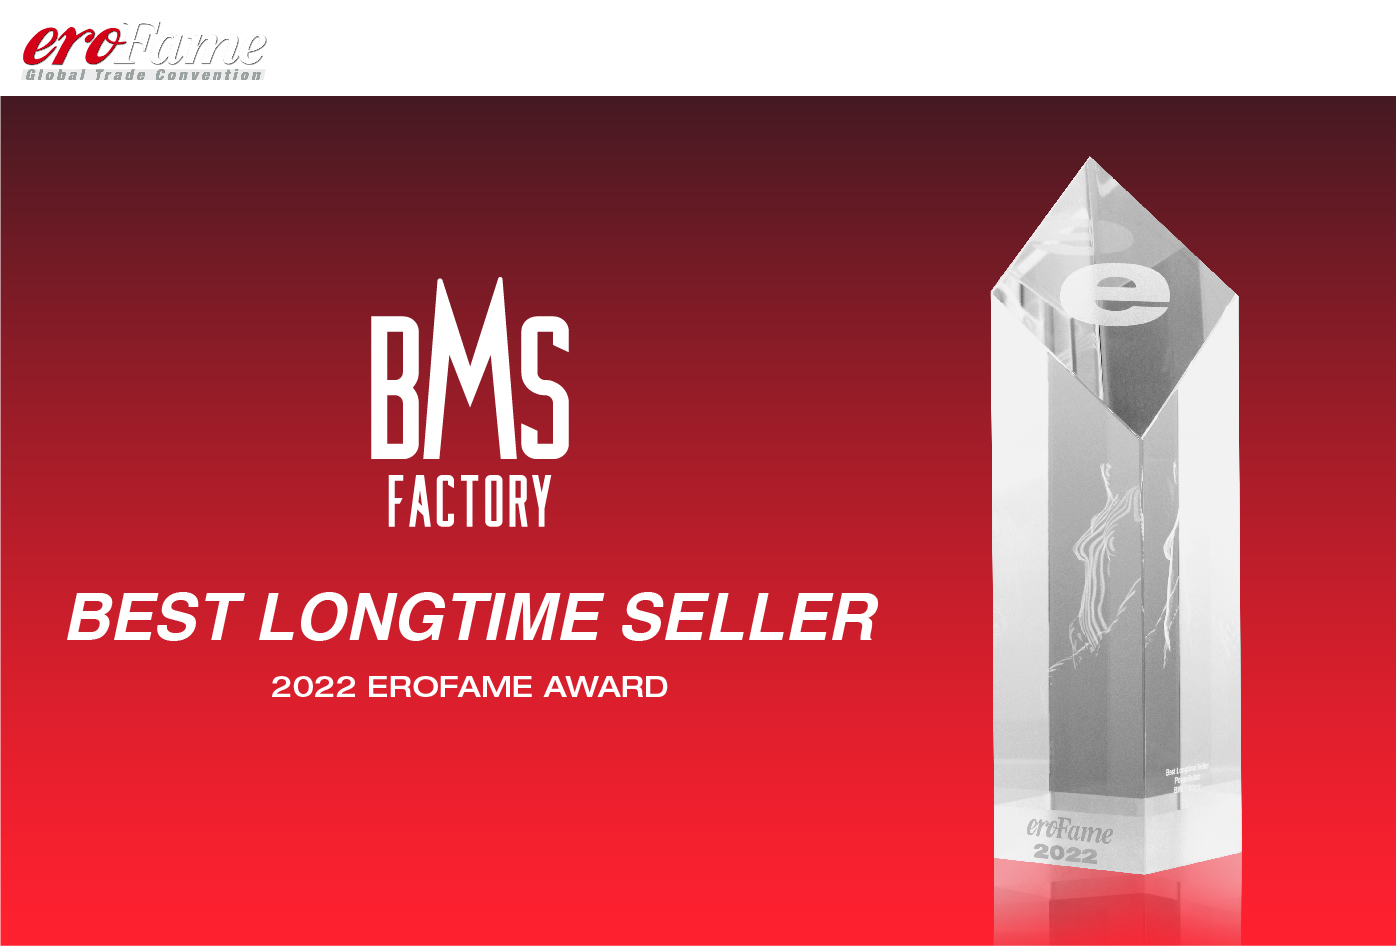 Ero Fame Award - Best Longtime Seller